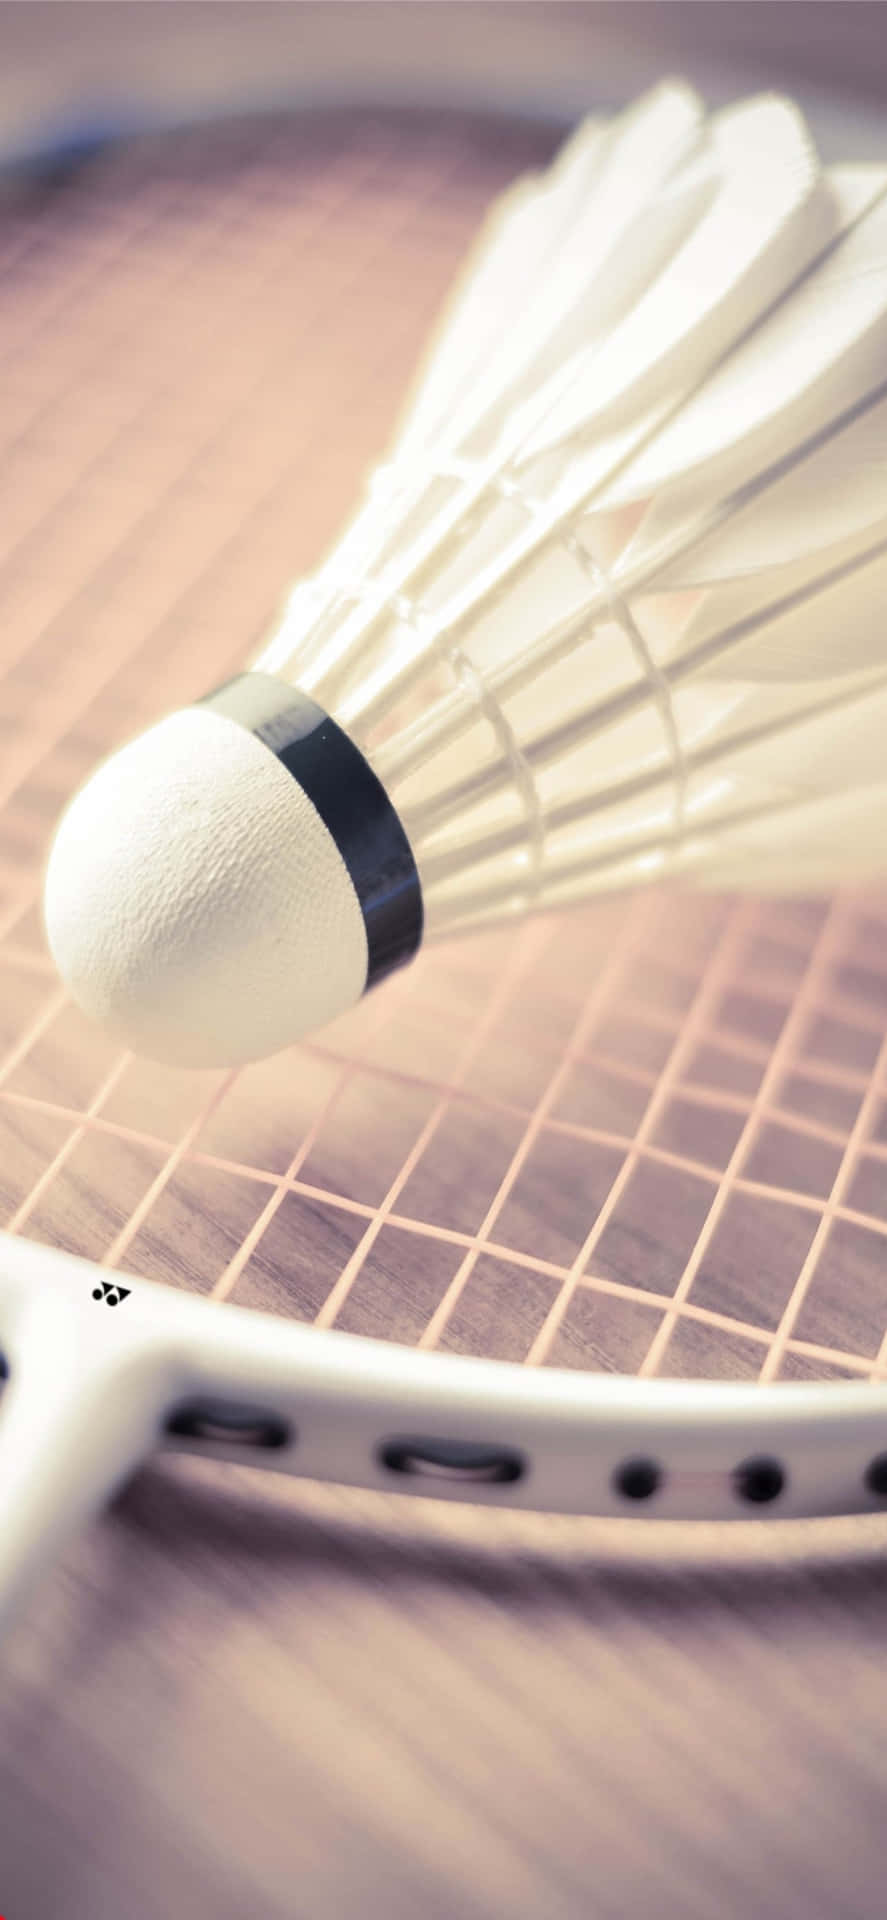 Bildnjut Av Spelet Badminton På Din Iphone Xs Max.